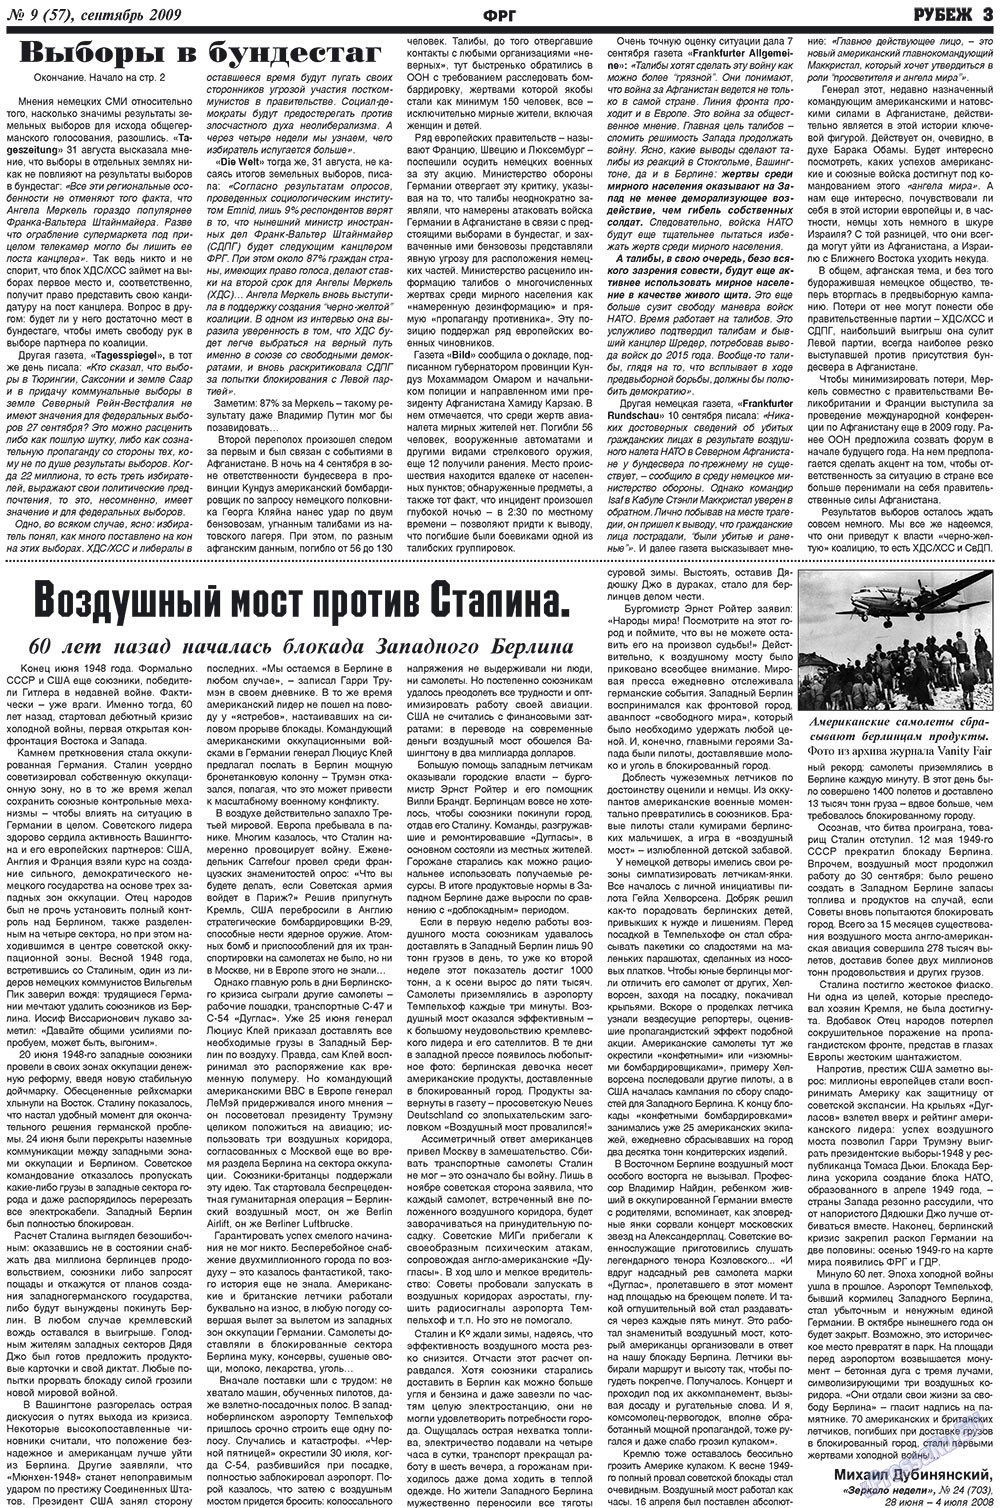 Рубеж (газета). 2009 год, номер 9, стр. 3